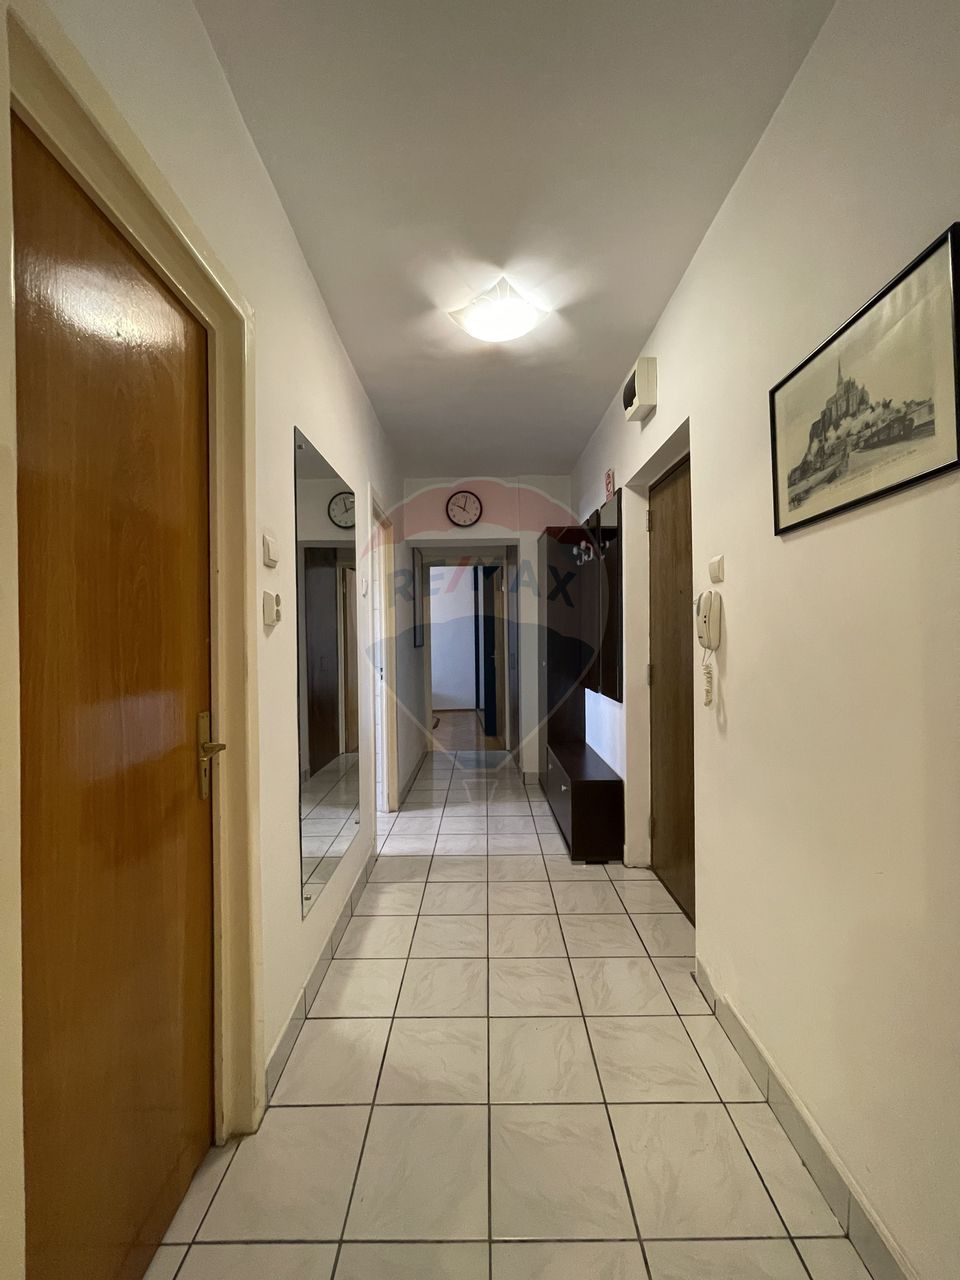 Apartament cu 2 camere de închiriat în zona Muncii